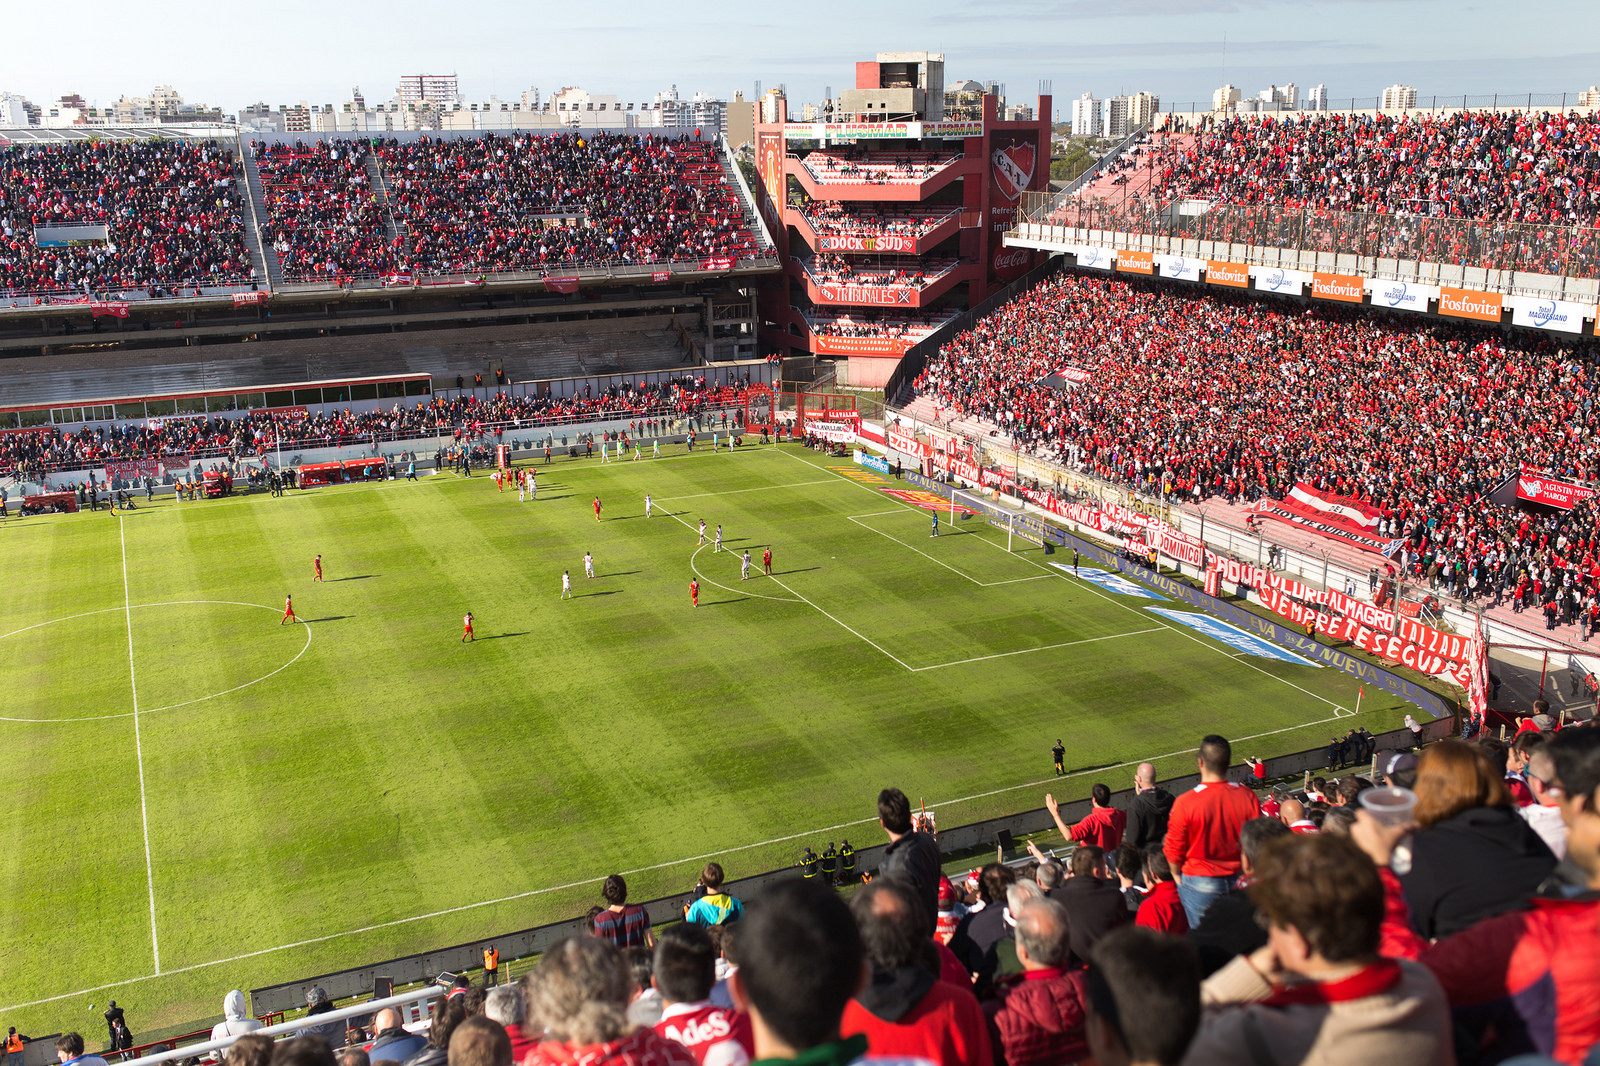 Estadio Libertadores de América-Ricardo Enrique Bochini